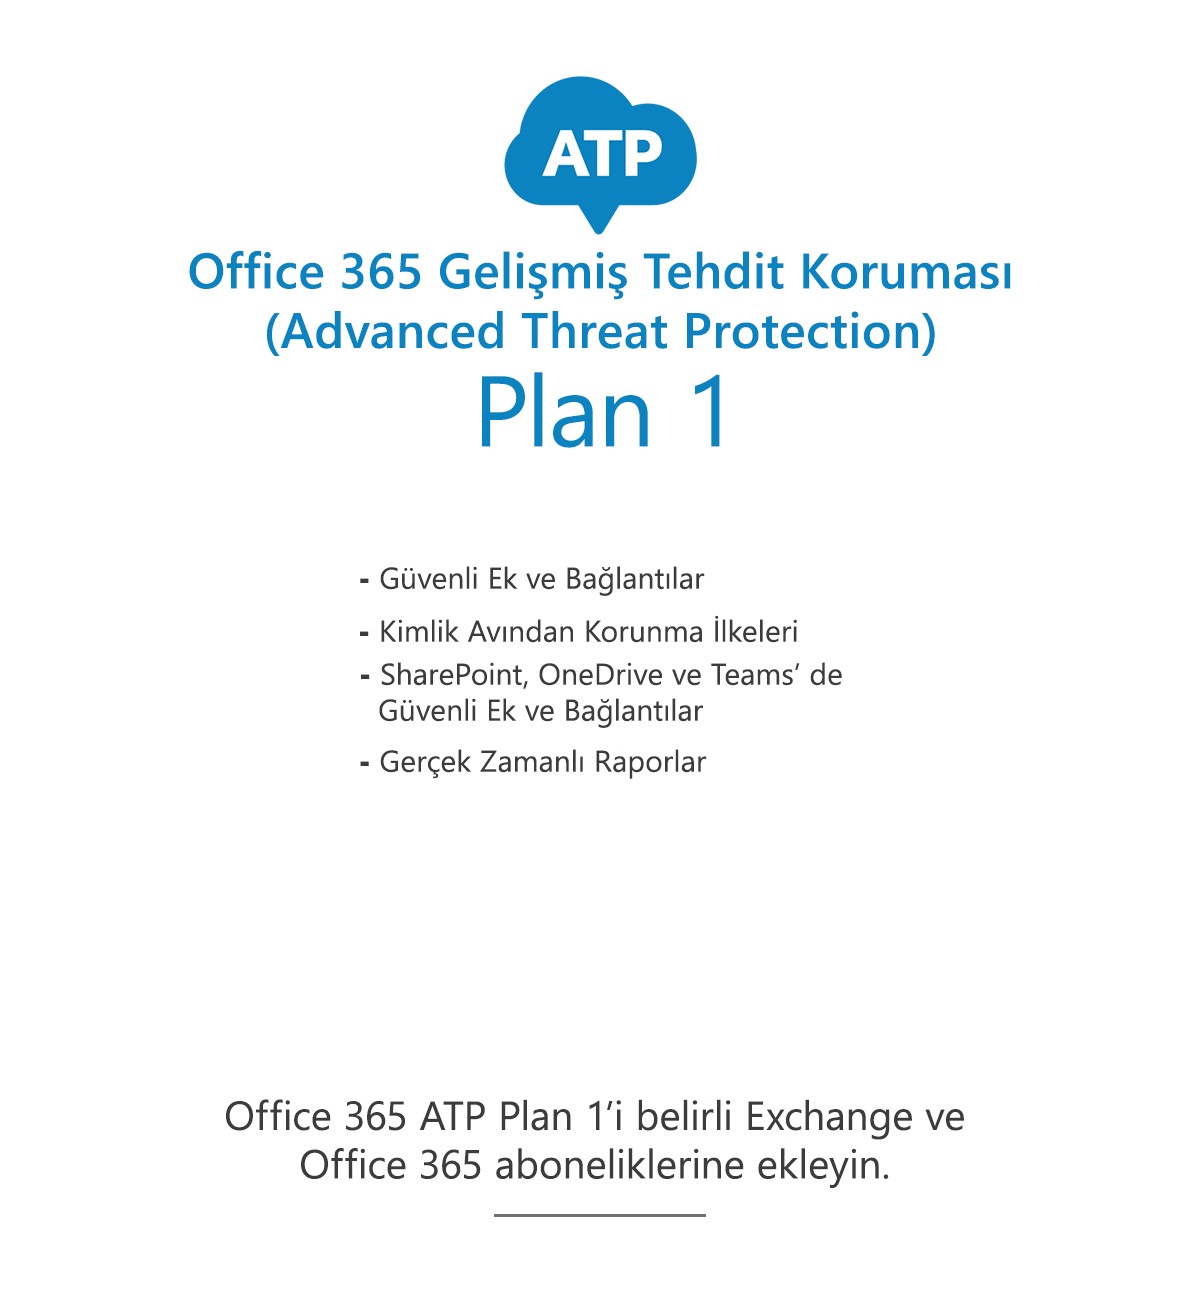 Office 365 Gelişmiş Tehdit Koruması (ATP) Plan 1